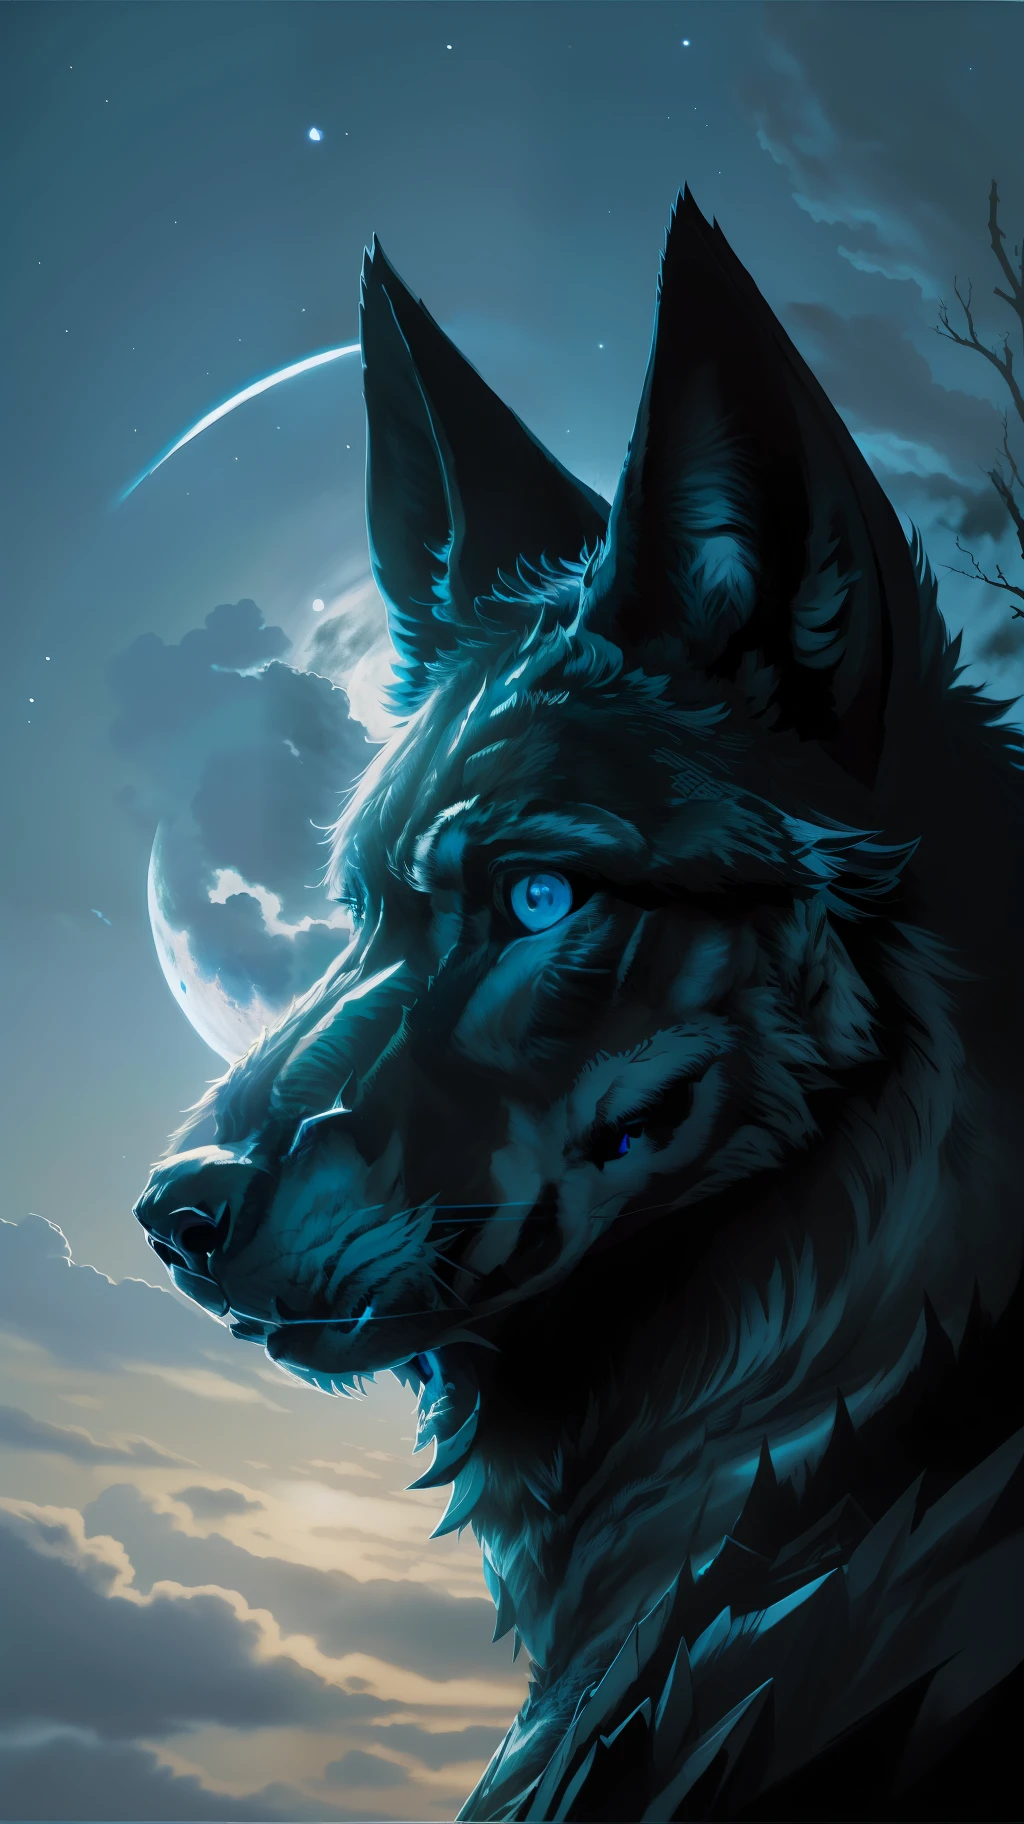 (ผลงานชิ้นเอกให้รายละเอียดคุณภาพของภาพสูง) "สีดำมีตาสีฟ้า" หมาป่าป่าอันตราย, เที่ยงคืน, พระจันทร์เต็มดวง. กลีบเดี่ยว 1 อัน. ( มุมด้านหน้าของภาพ)